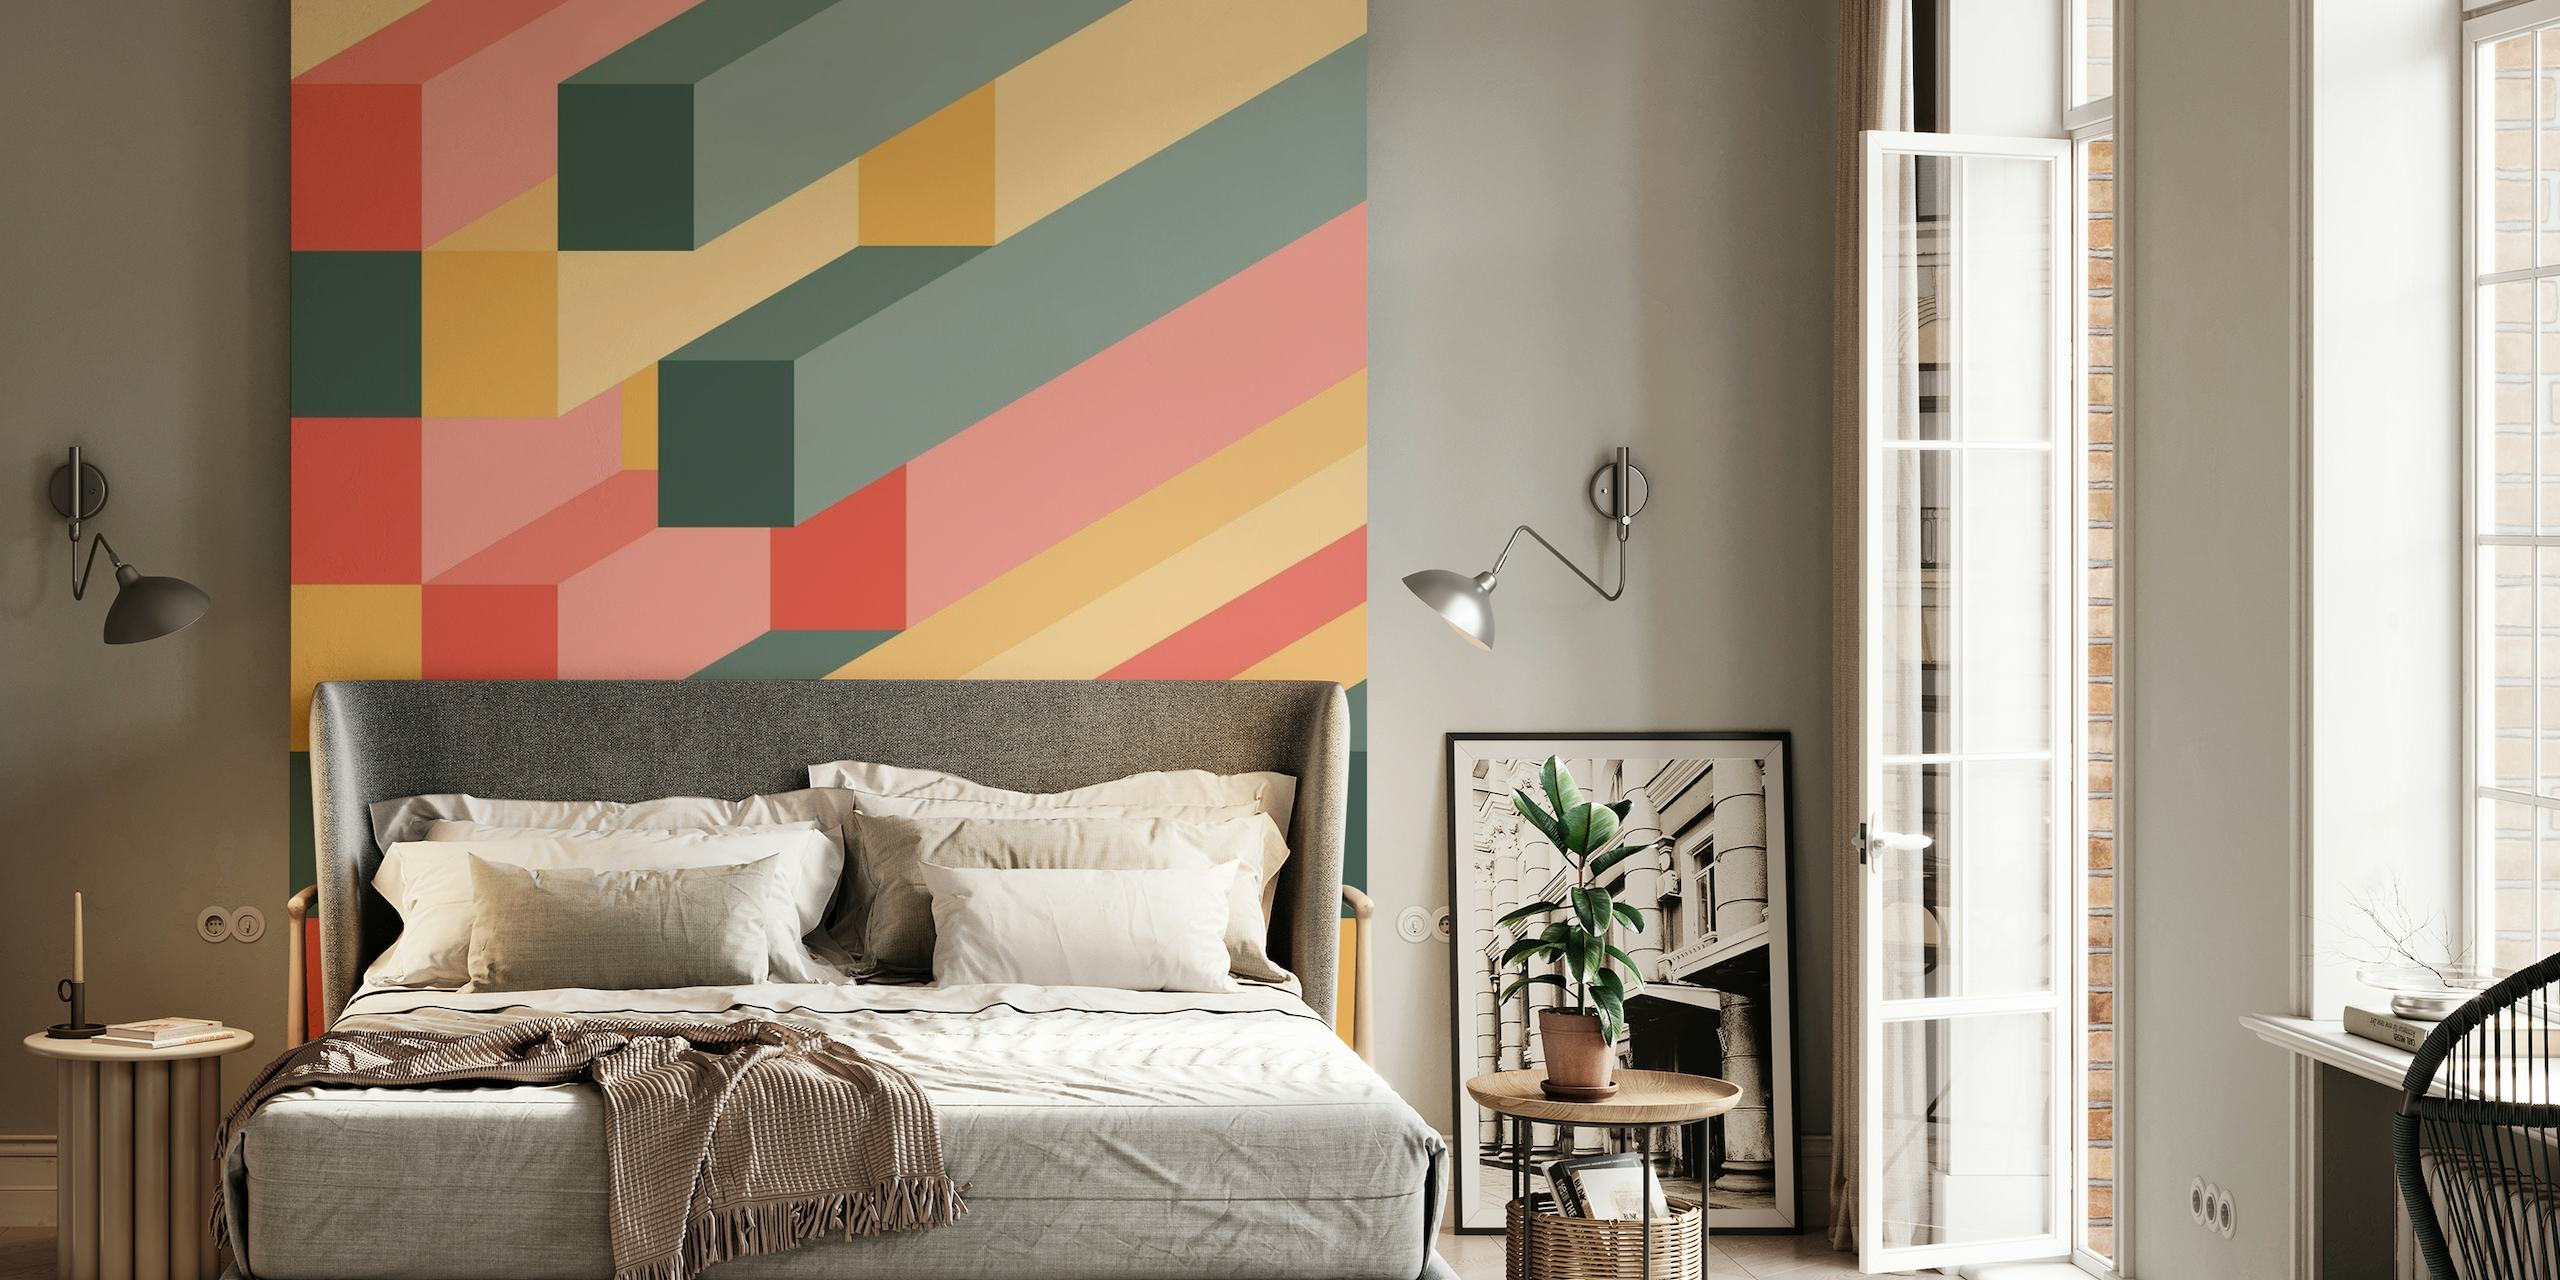 Wandbild mit isometrischen Blöcken und 3D-Würfeln in warmen Farbtönen